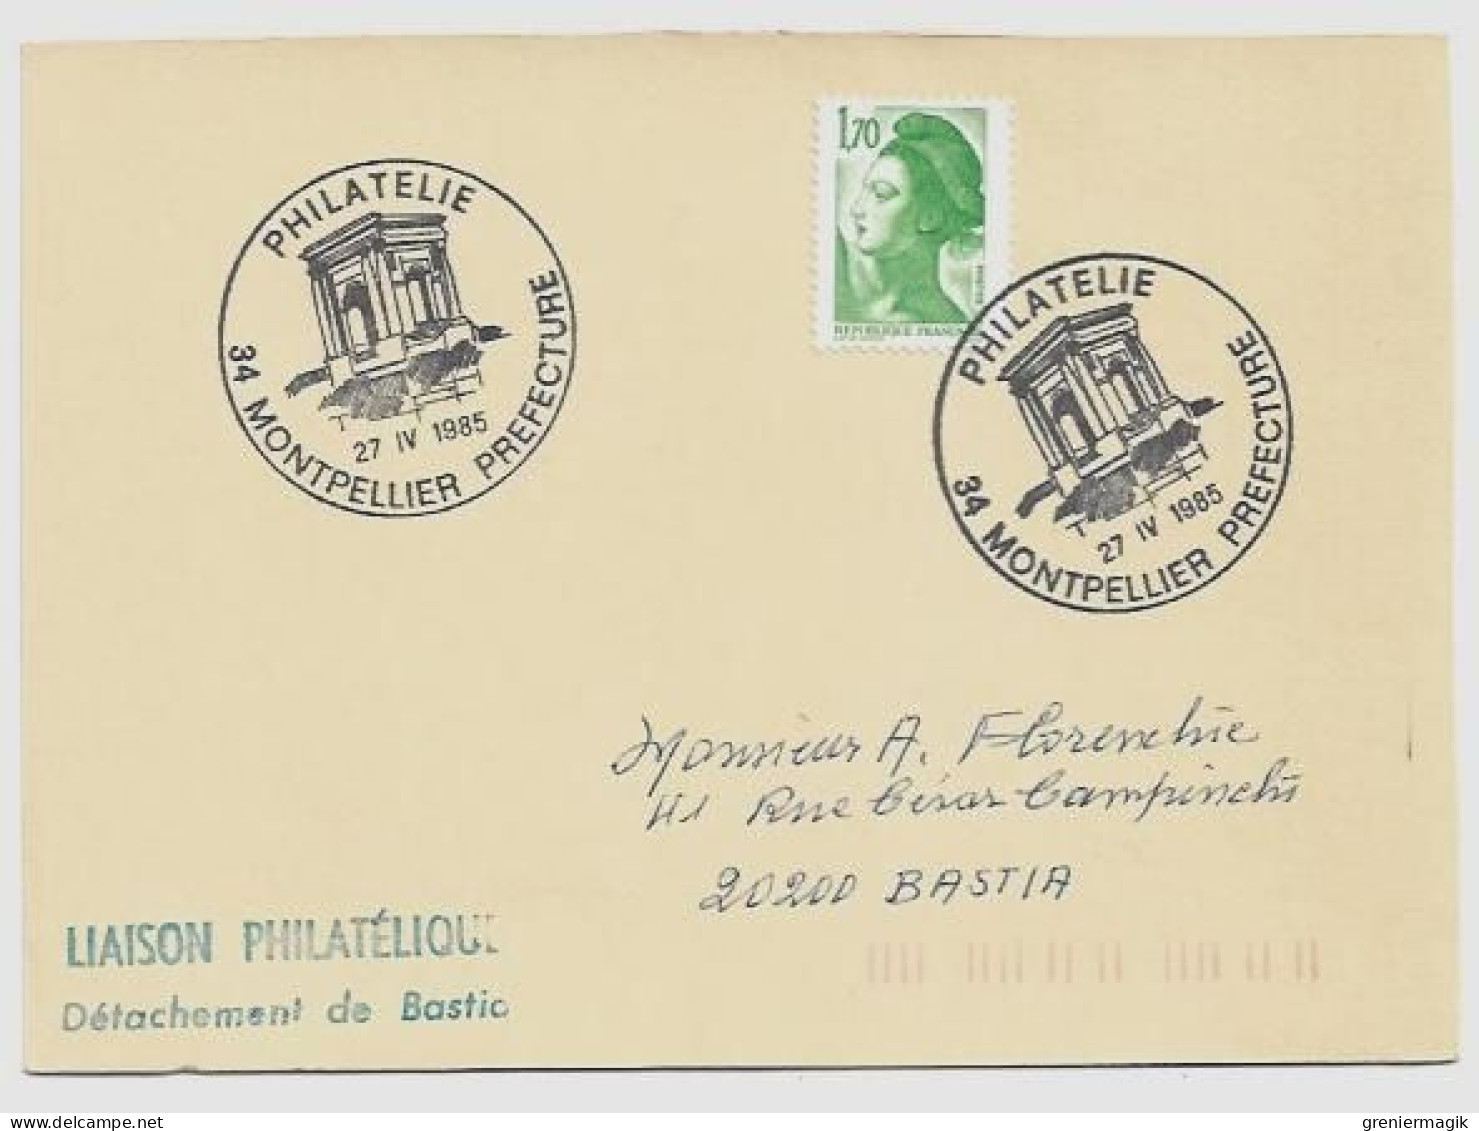 N°2318 Cachet Philatélie Montpellier Préfecture 27 IV 1985 - Liaison Philatélique Bastia - Liberté Gandon 1,70 Vert - Cachets Provisoires